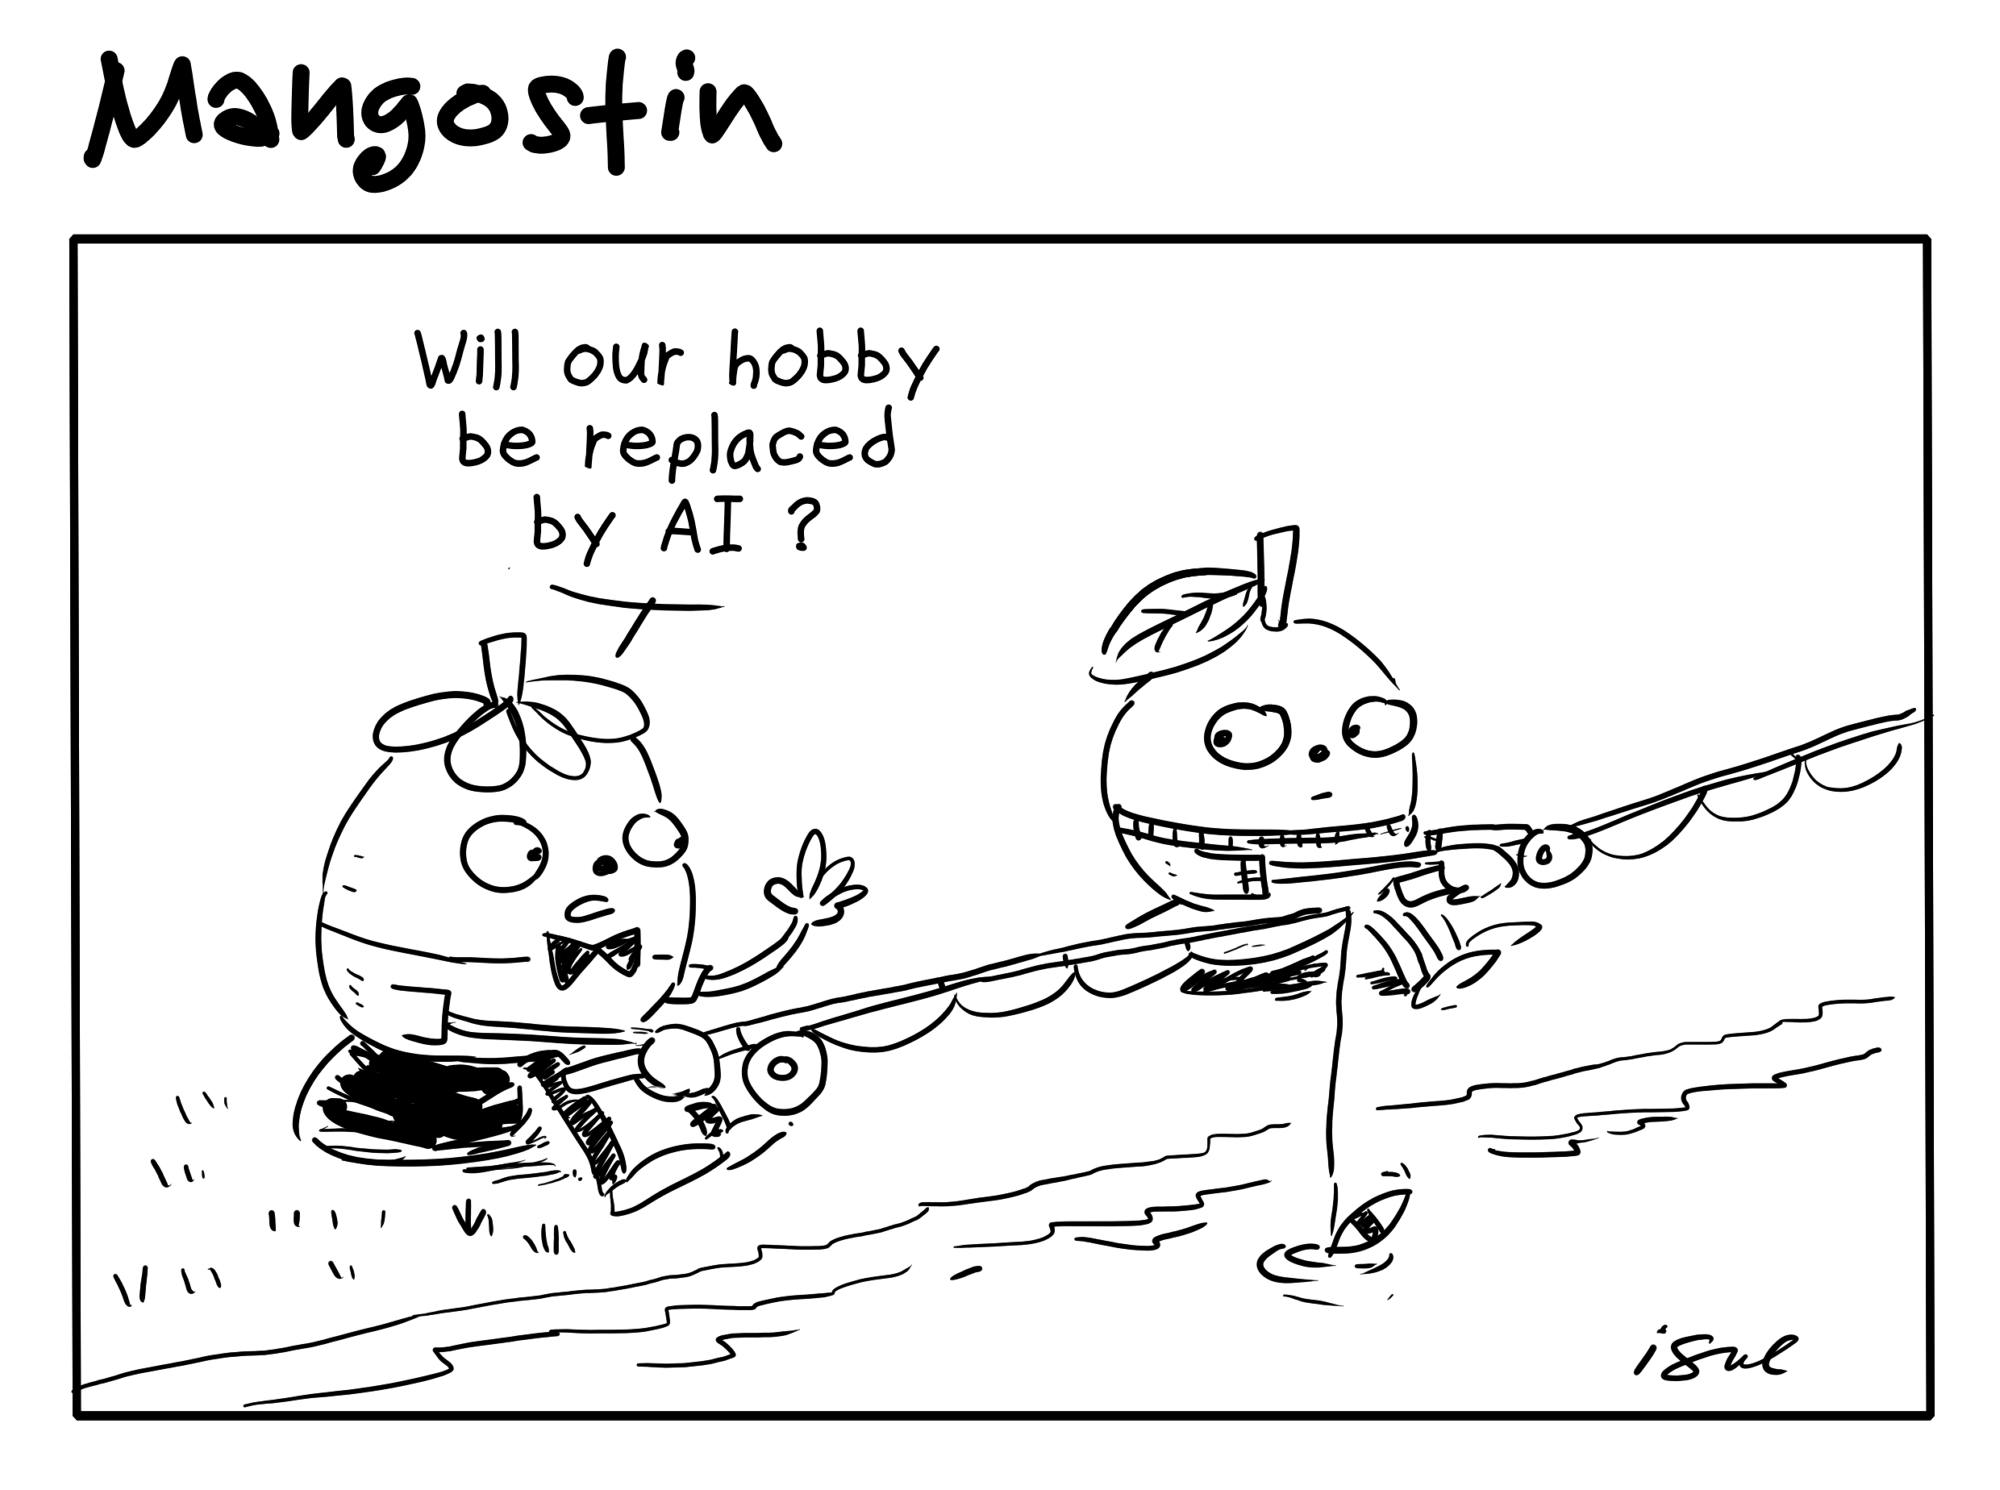 mangostin - Fishing, Hobby and Fishing